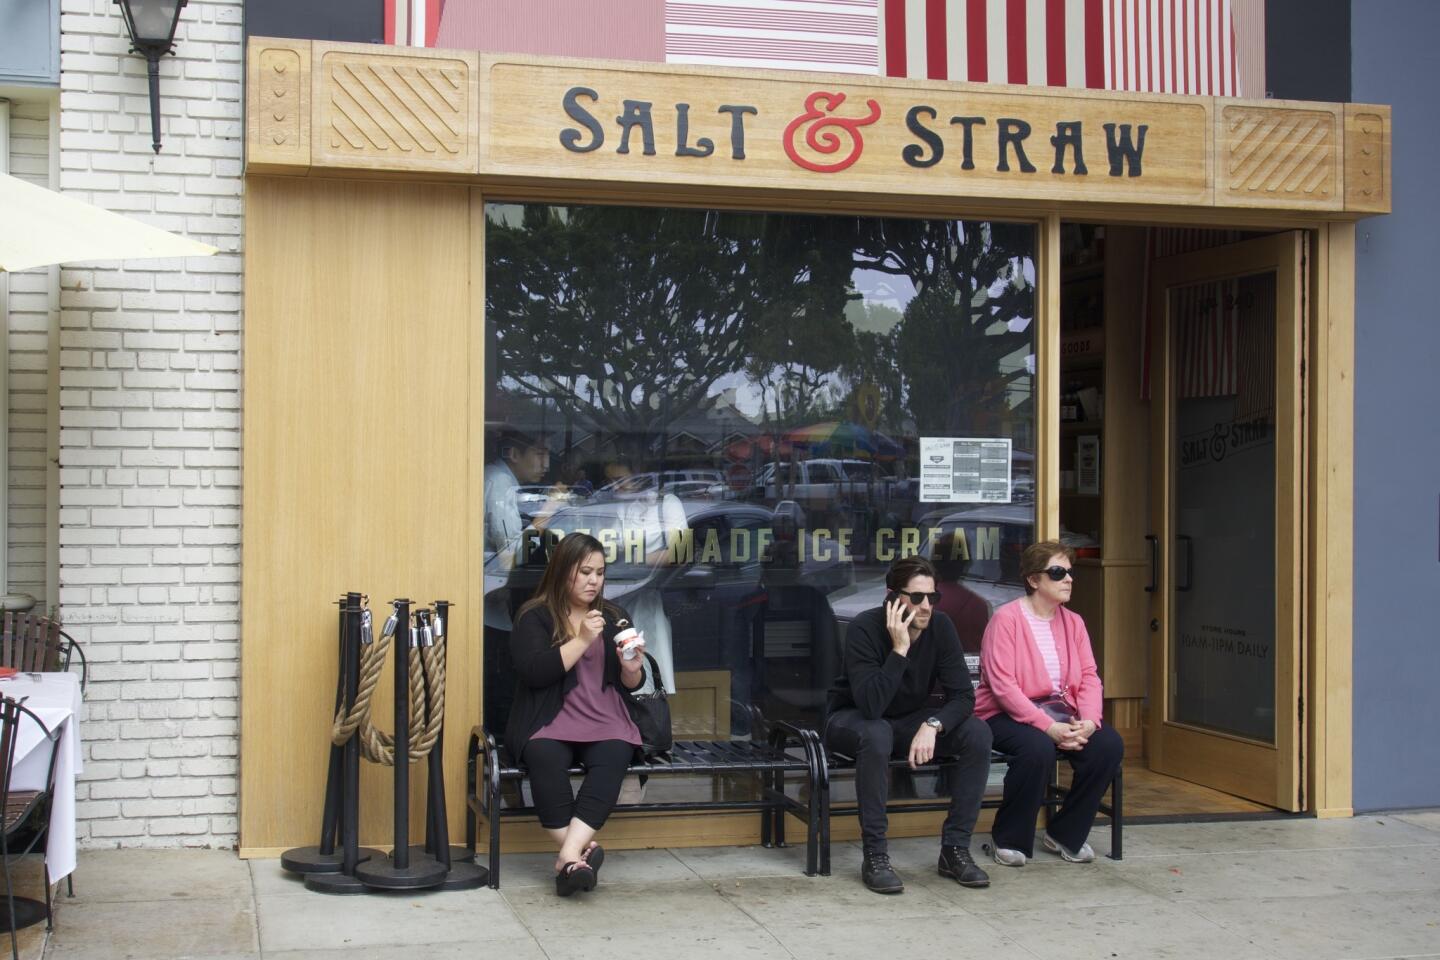 A rare moment: No line at Salt & Straw ice cream shop